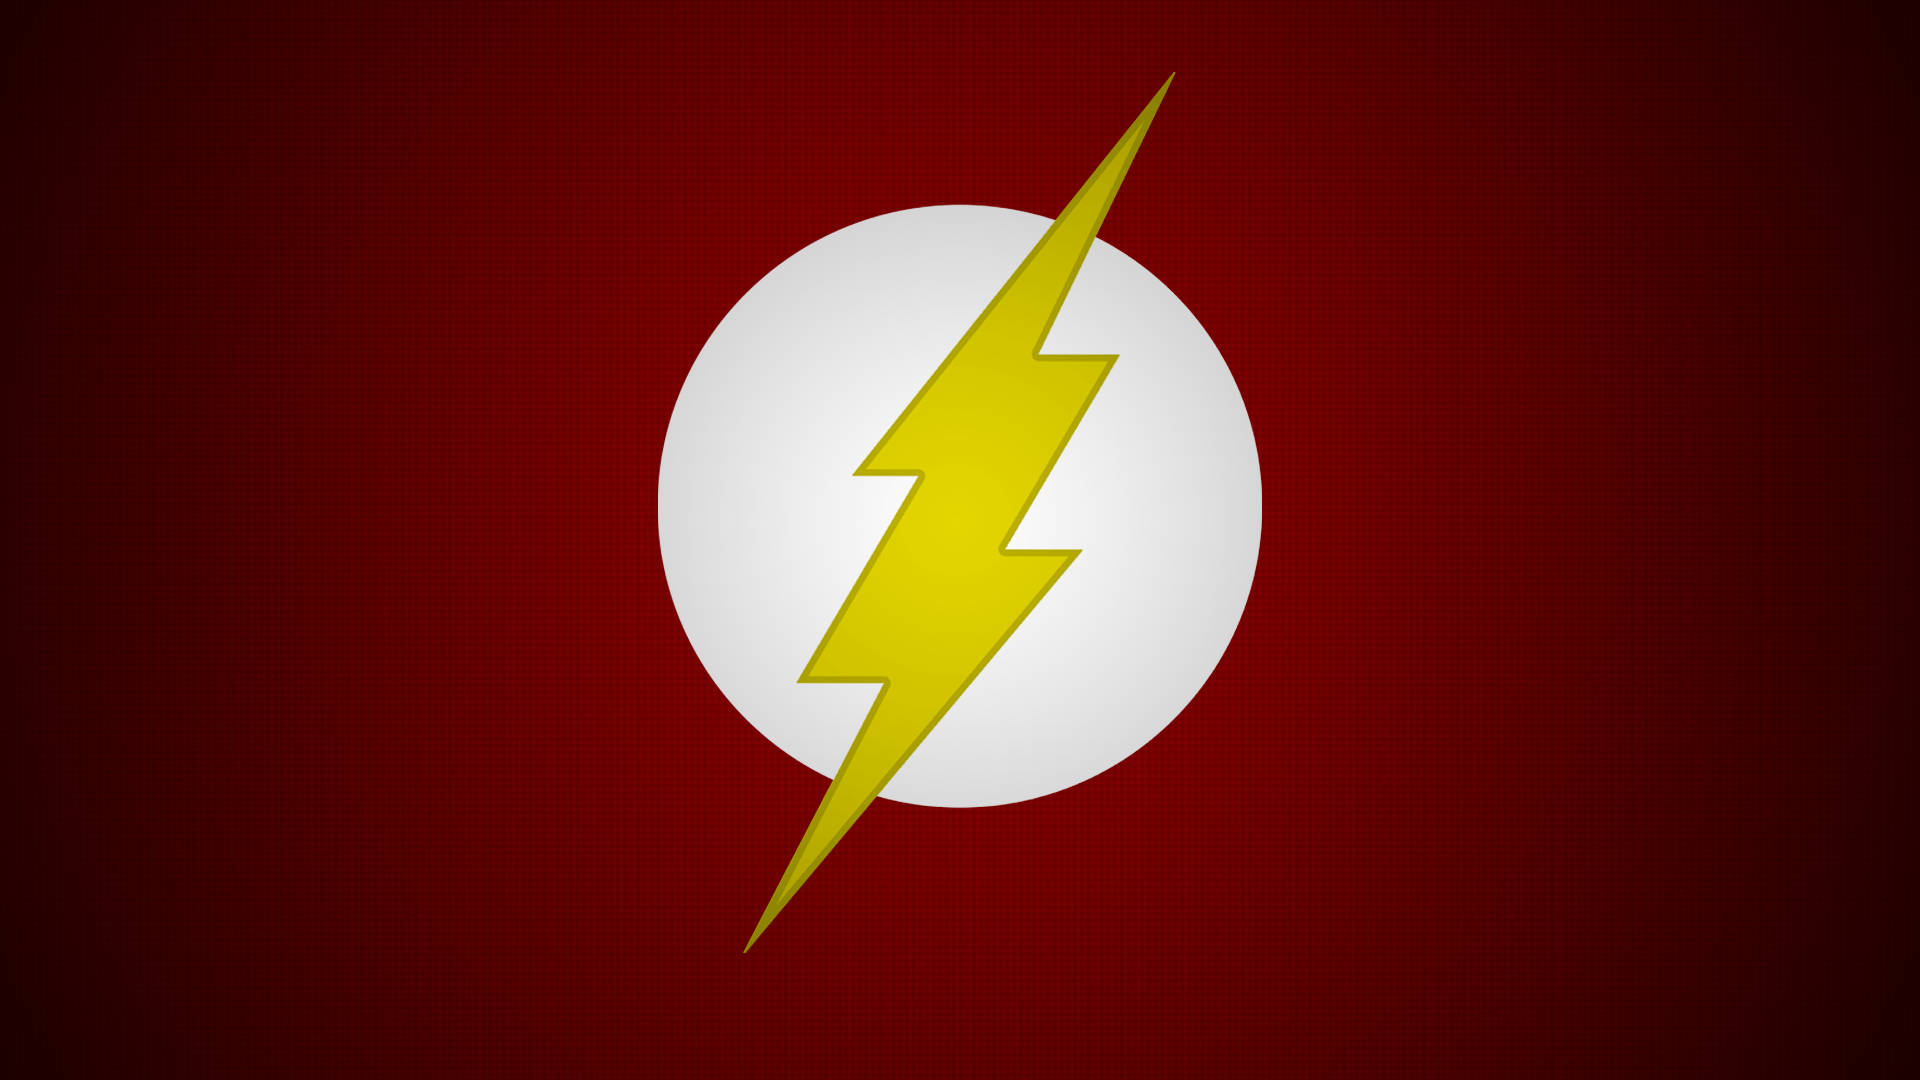 Minimalist Dark Red The Flash Logo Background